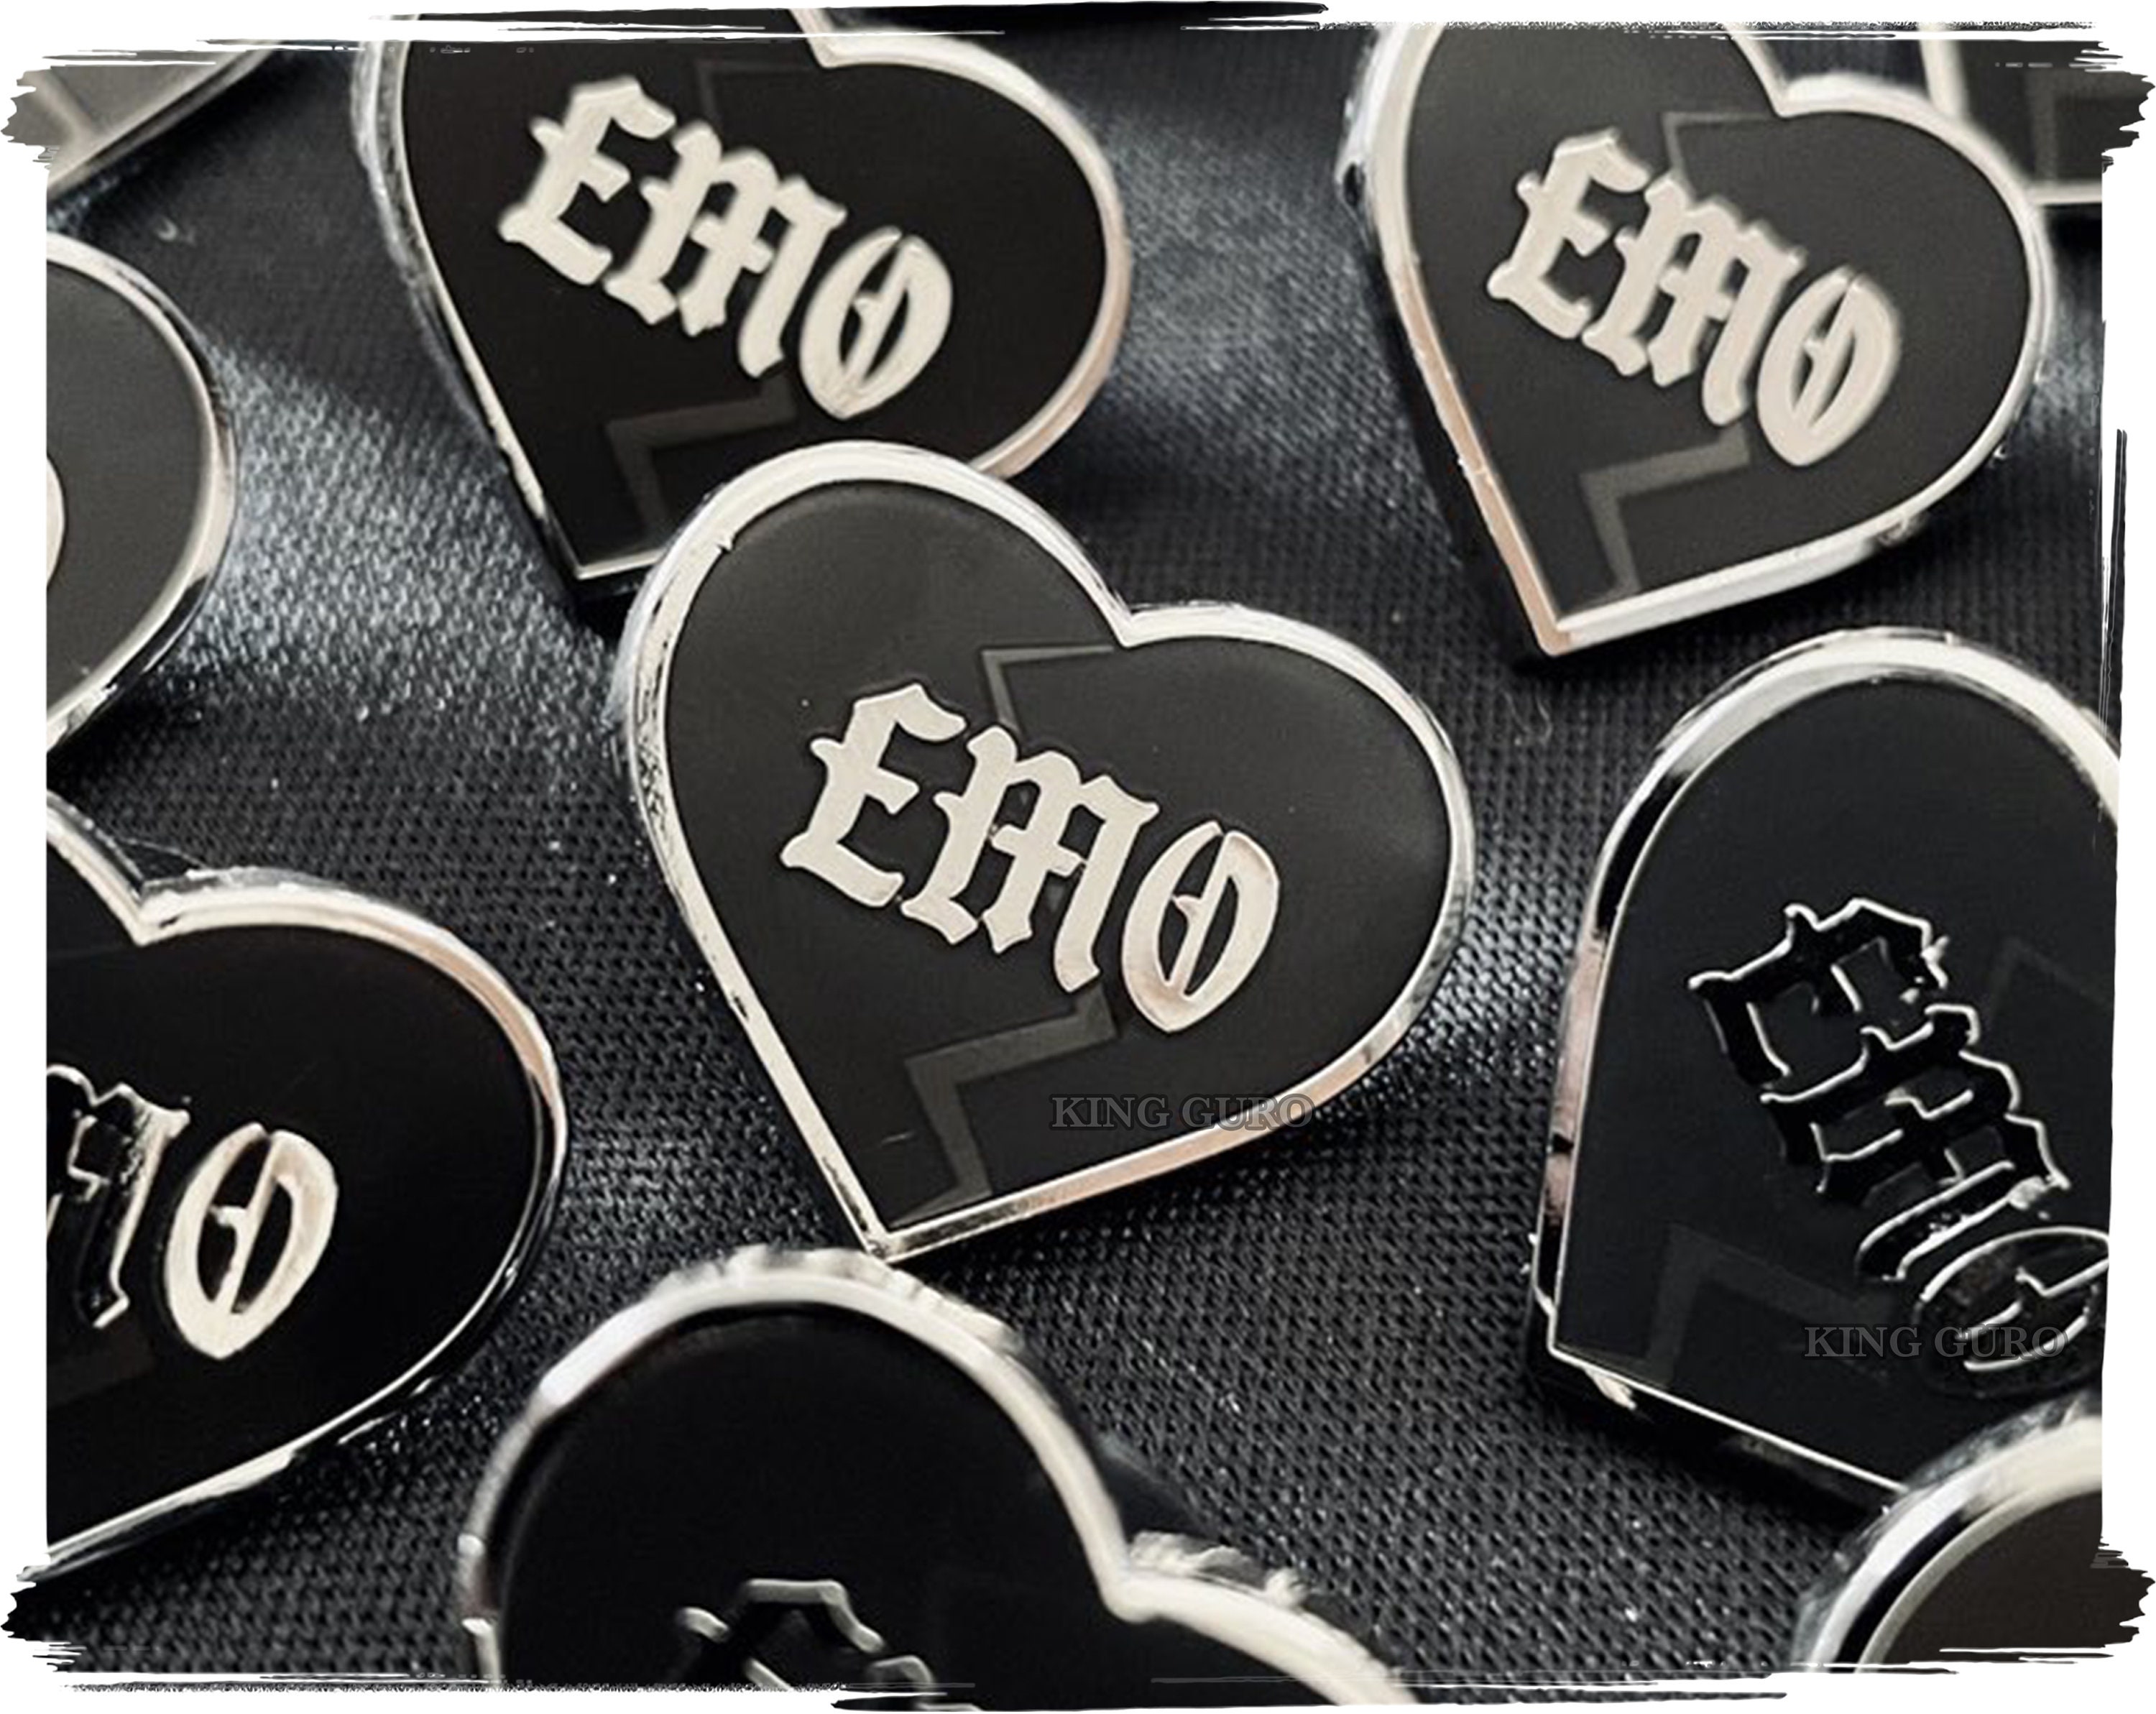 Elder Emo Drip Heart Enamel Pin